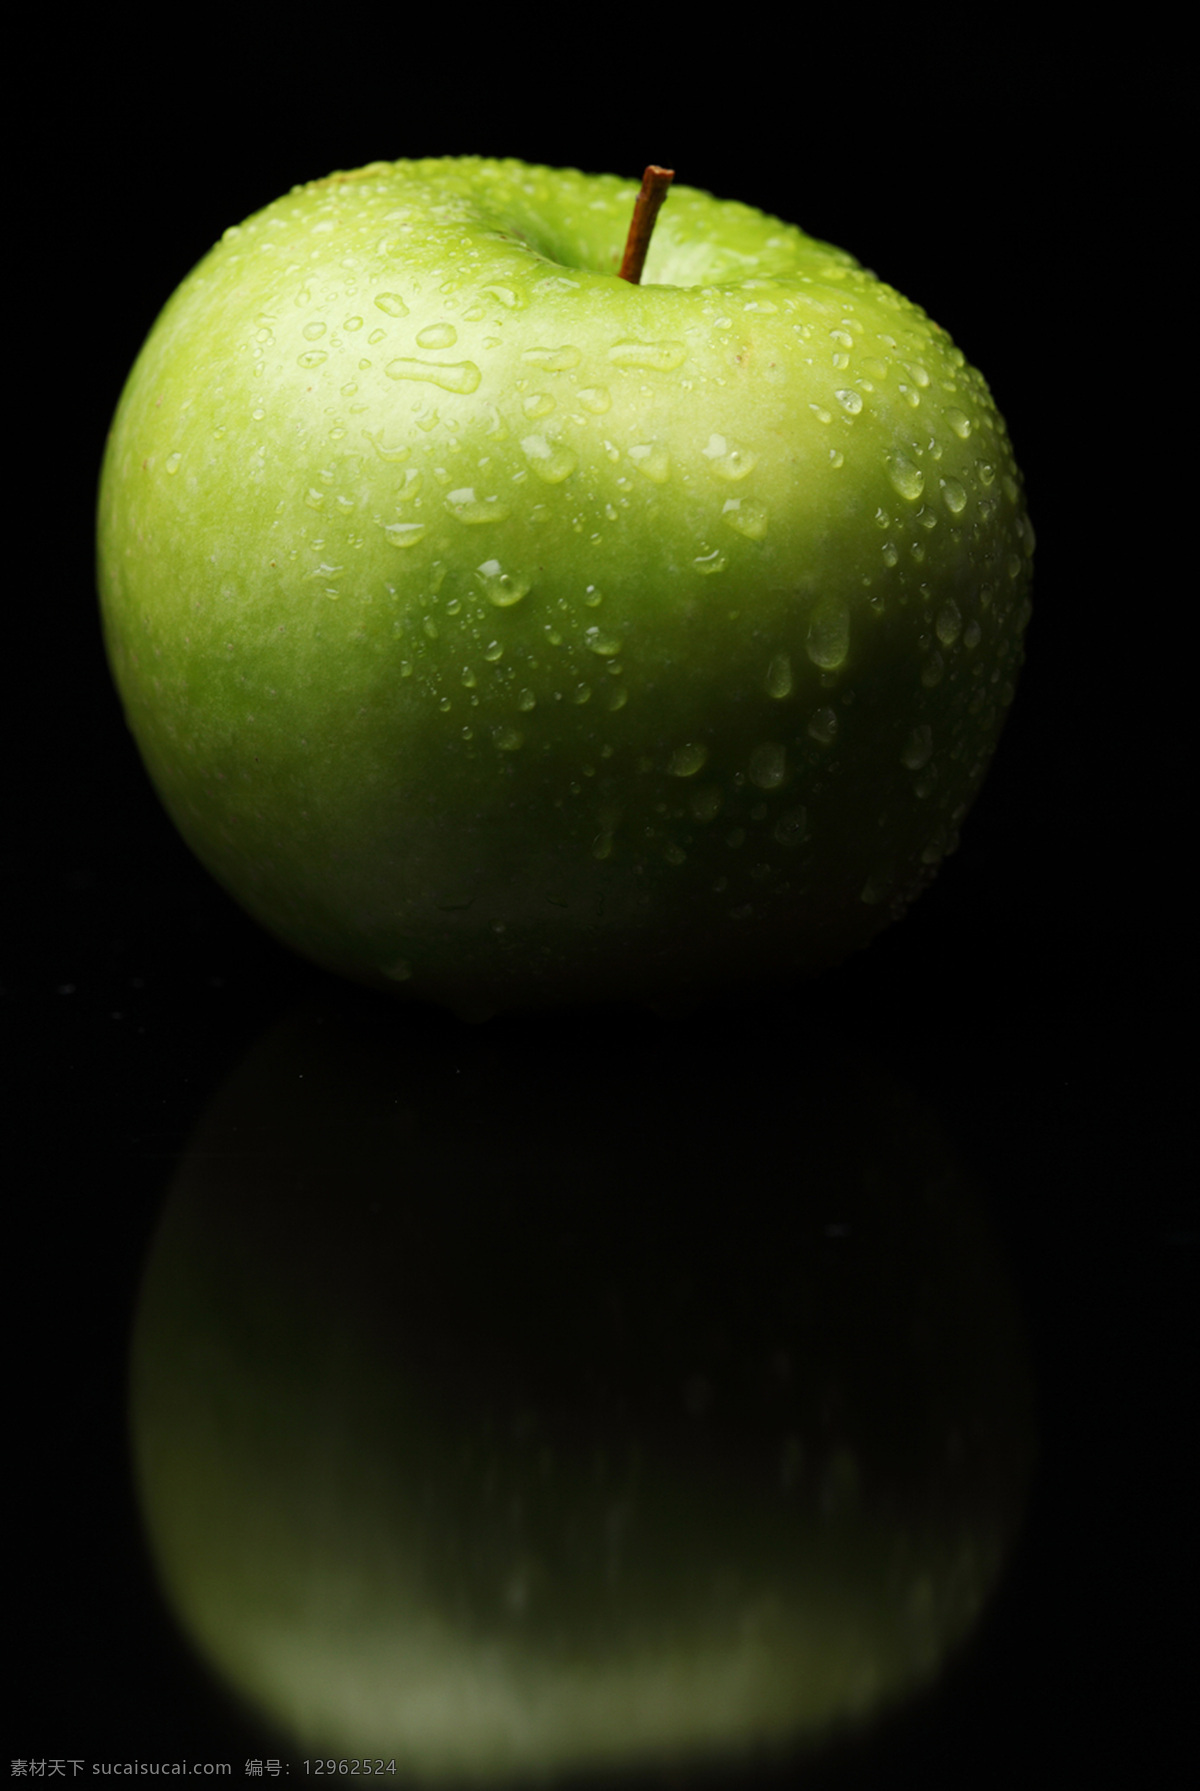 诱人苹果 青苹果 苹果 新鲜苹果 水珠 露珠 露水 新鲜水果 蔬菜水果 水果高清图片 水果 生物世界